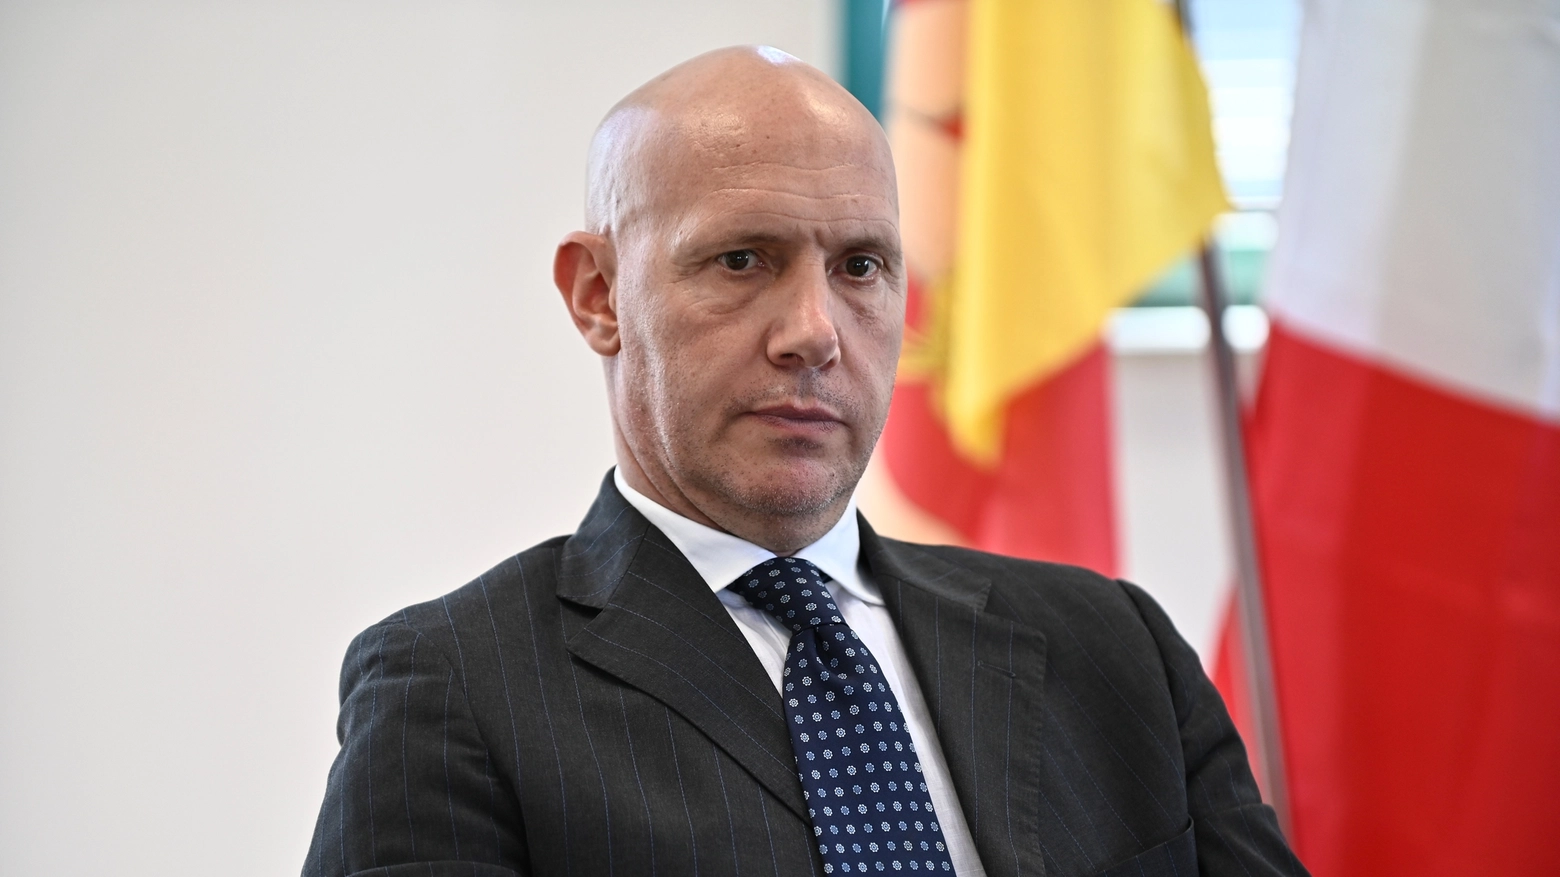 Gabriele Visco, ex manager di Invitalia